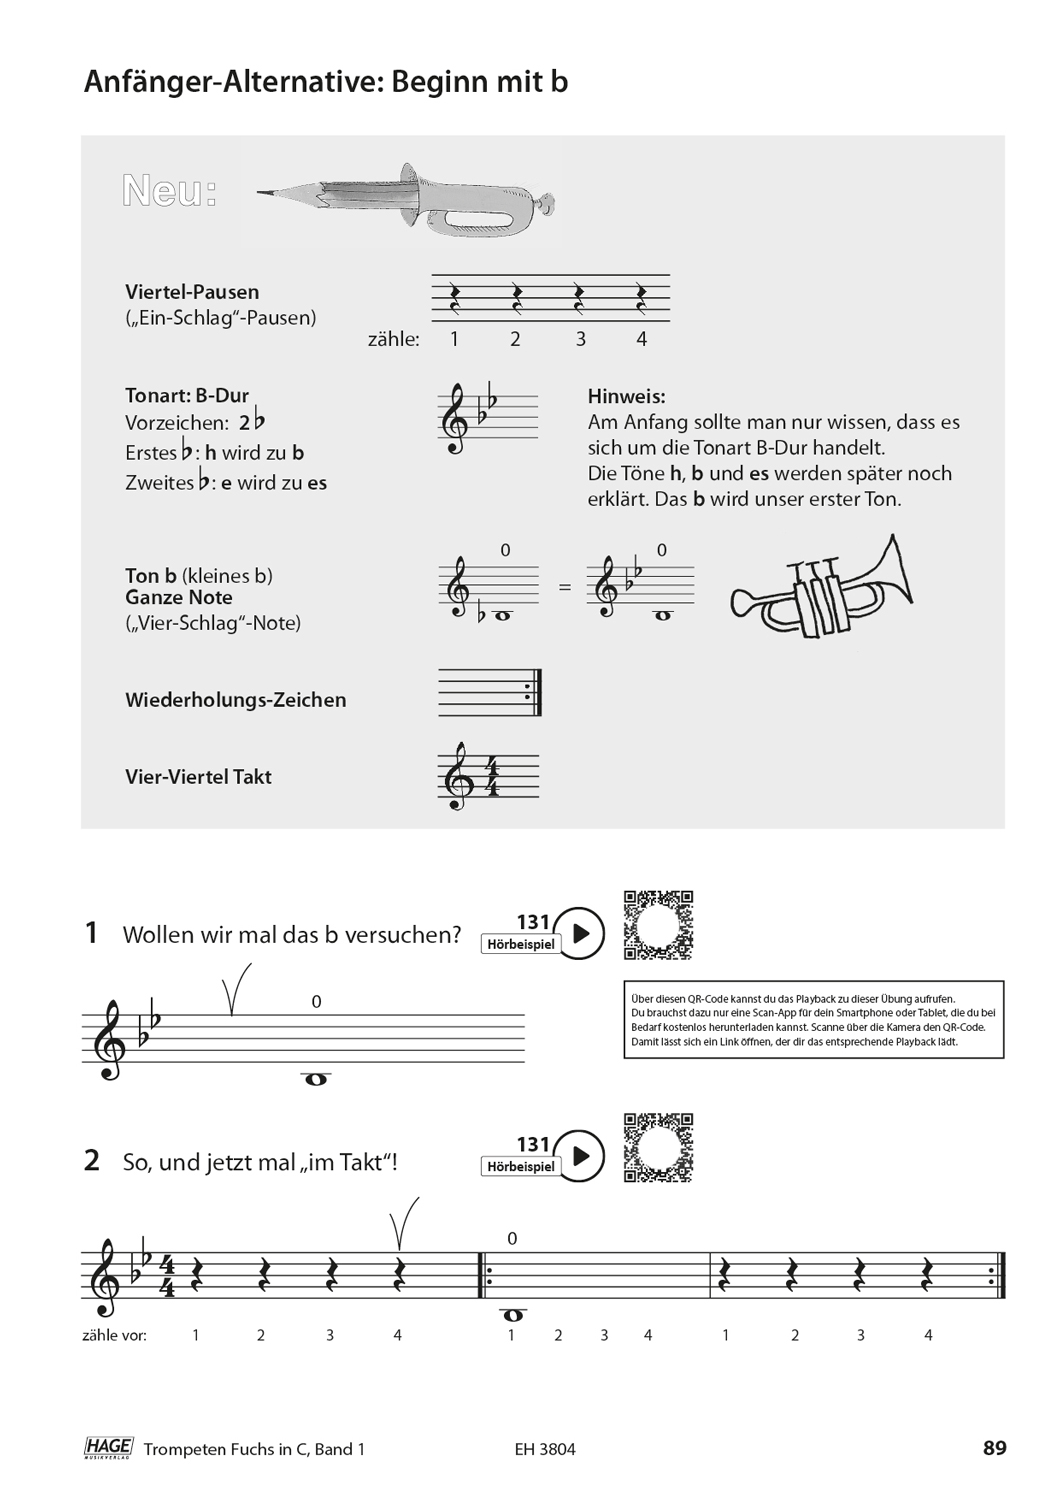 Trompeten Fuchs Band 1 in C für Posaunenchor (mit CD) Seiten 9